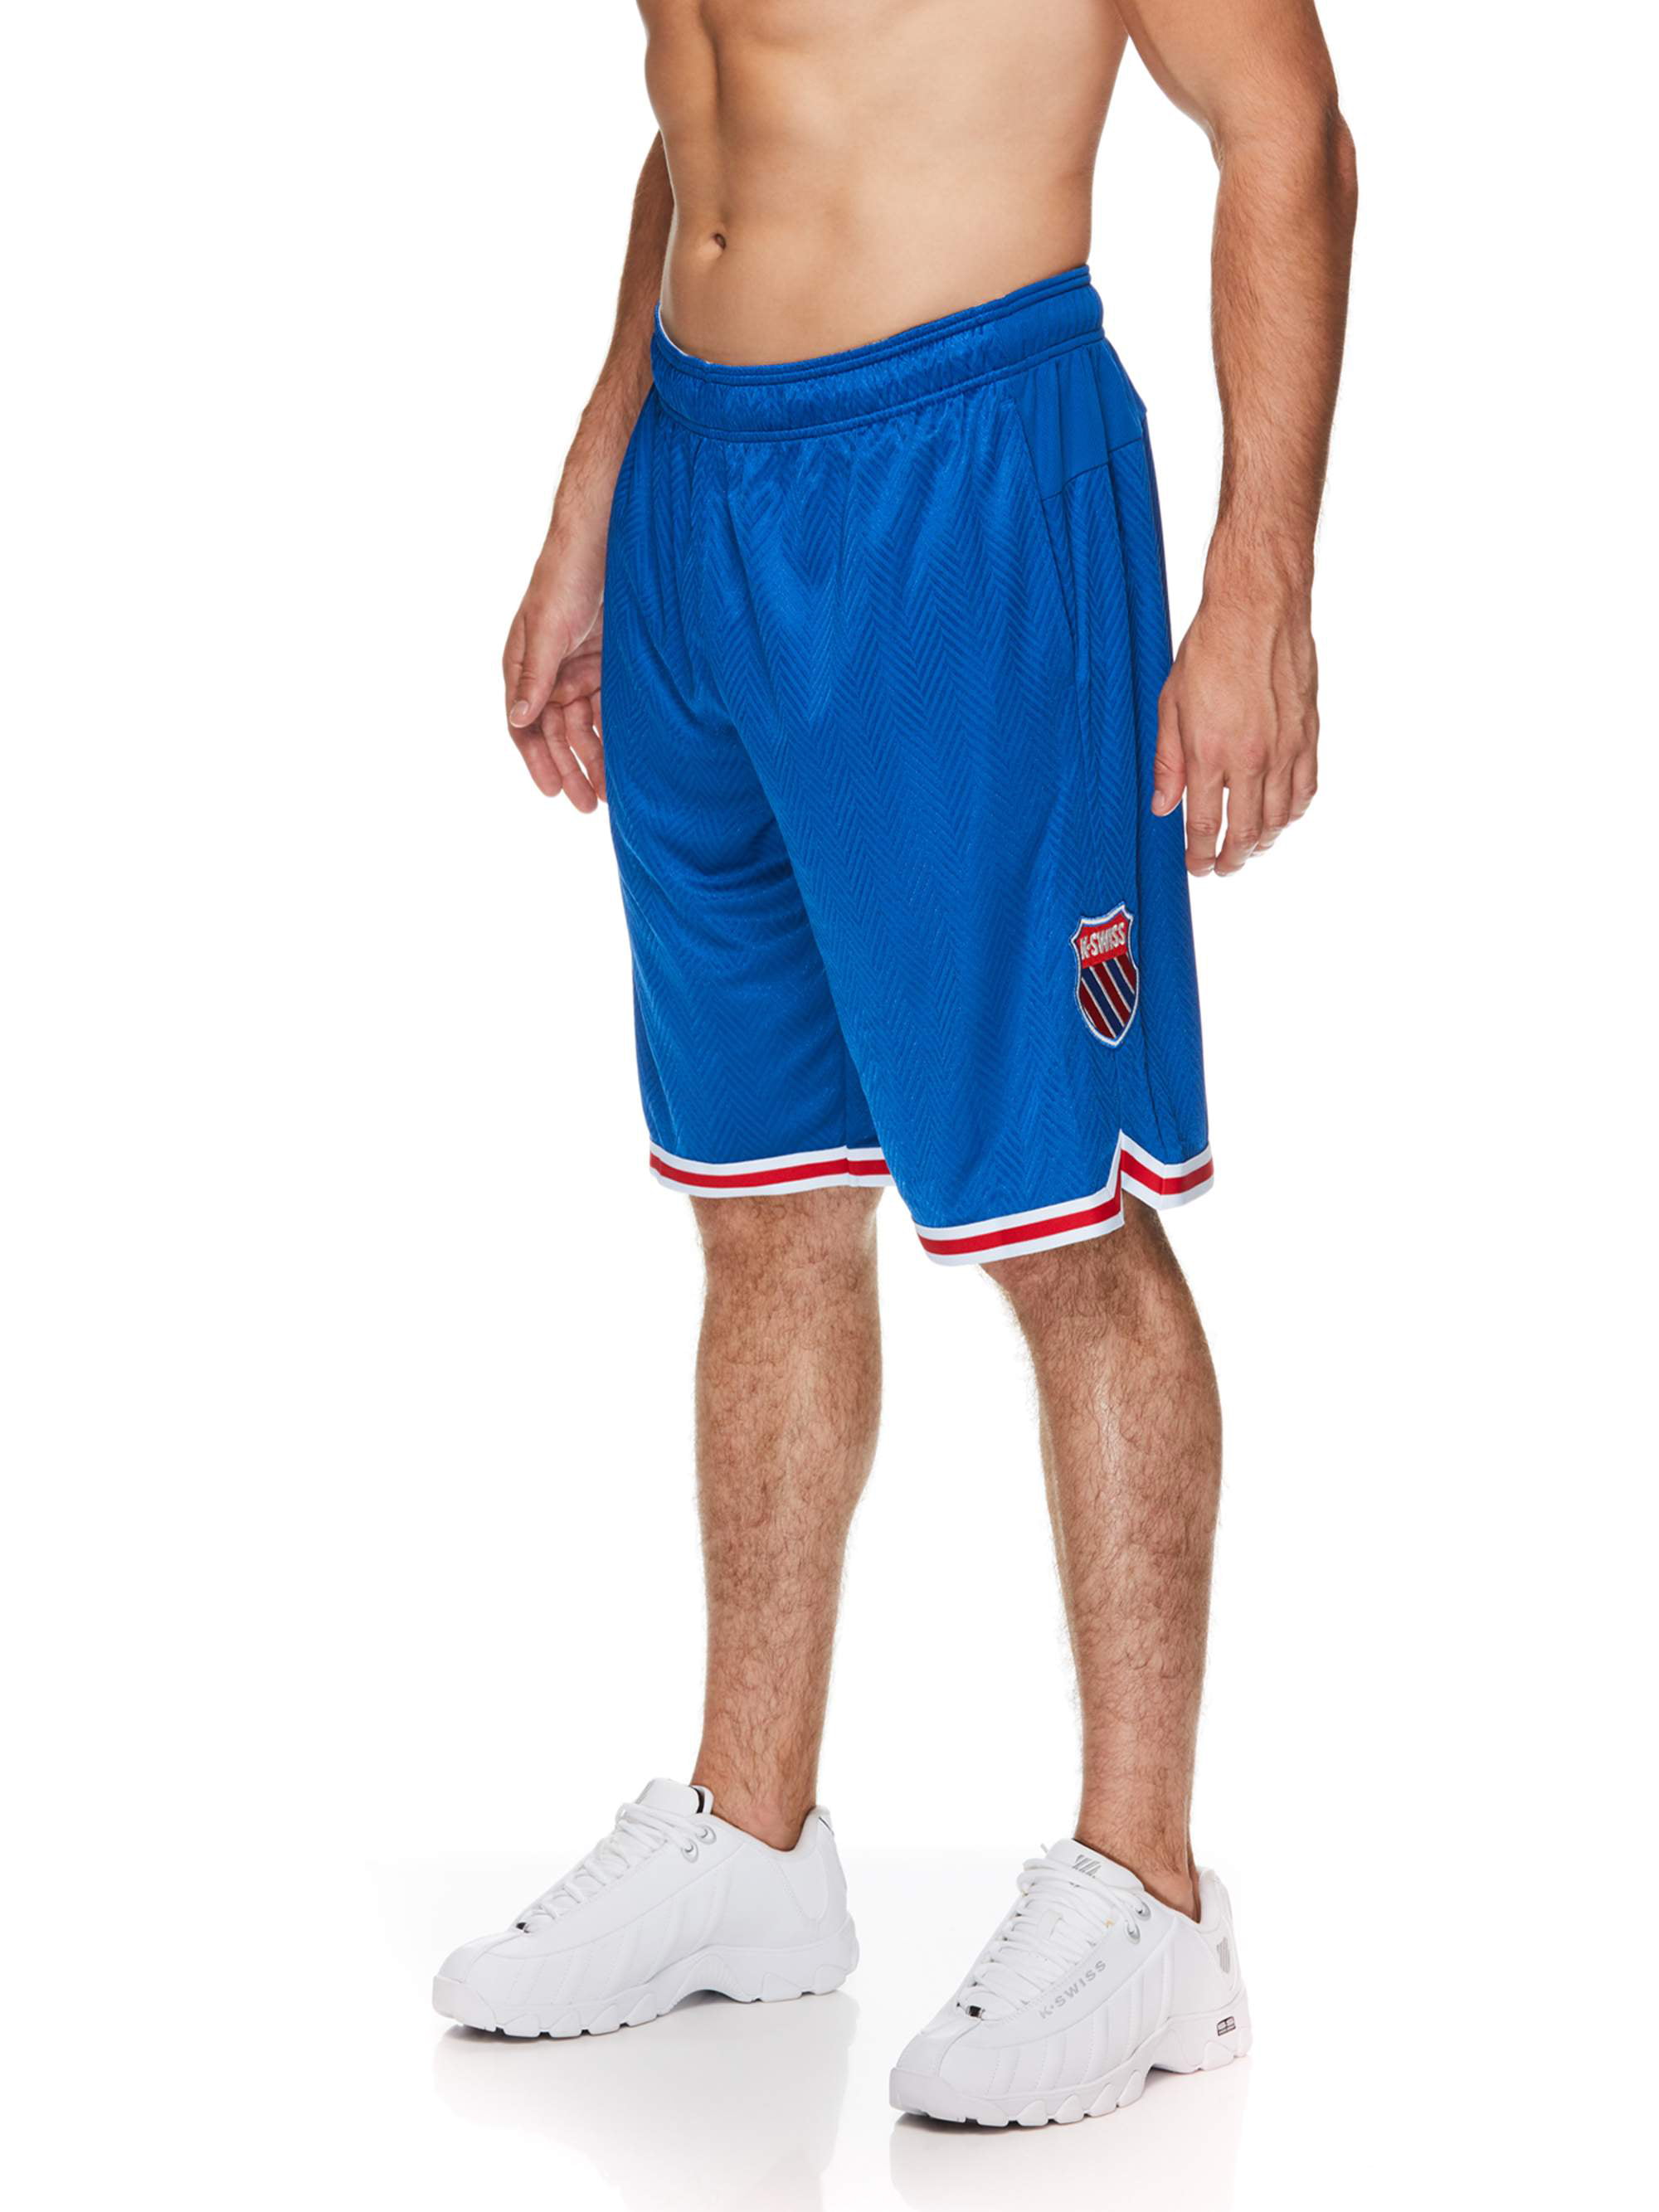 Frustratie Antipoison Intrekking K-Swiss Men's Top Spin Basketball Shorts - Walmart.com